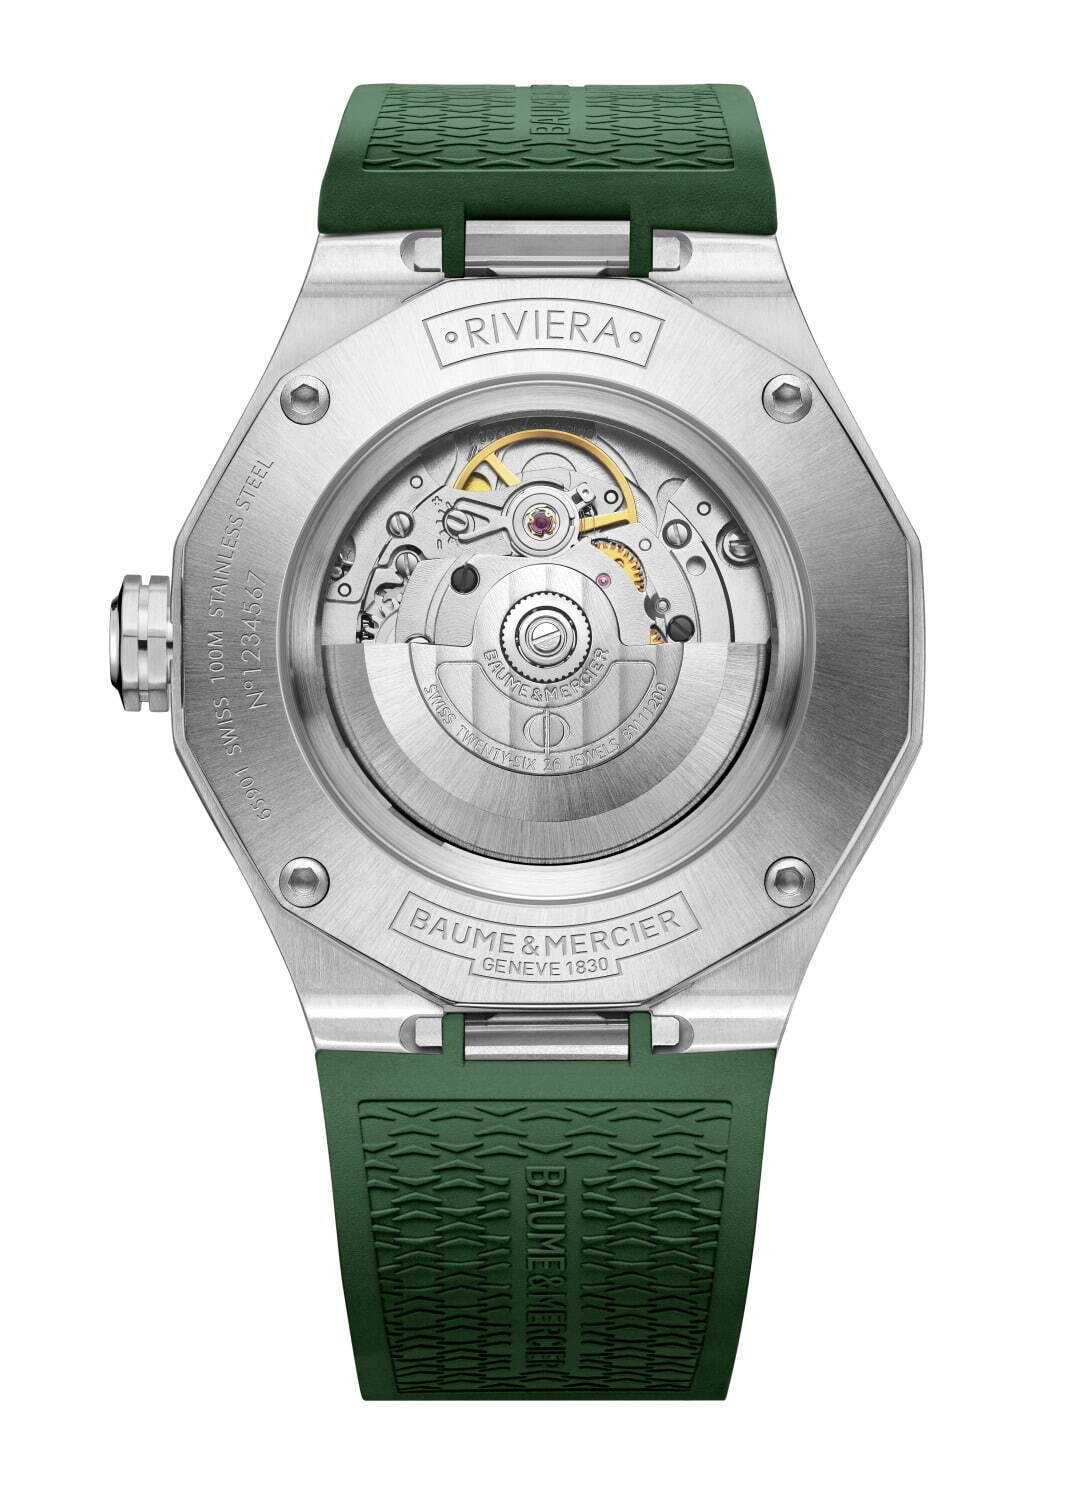 ボーム＆メルシエの腕時計「リビエラ」新作、ウェーブ装飾を施した 